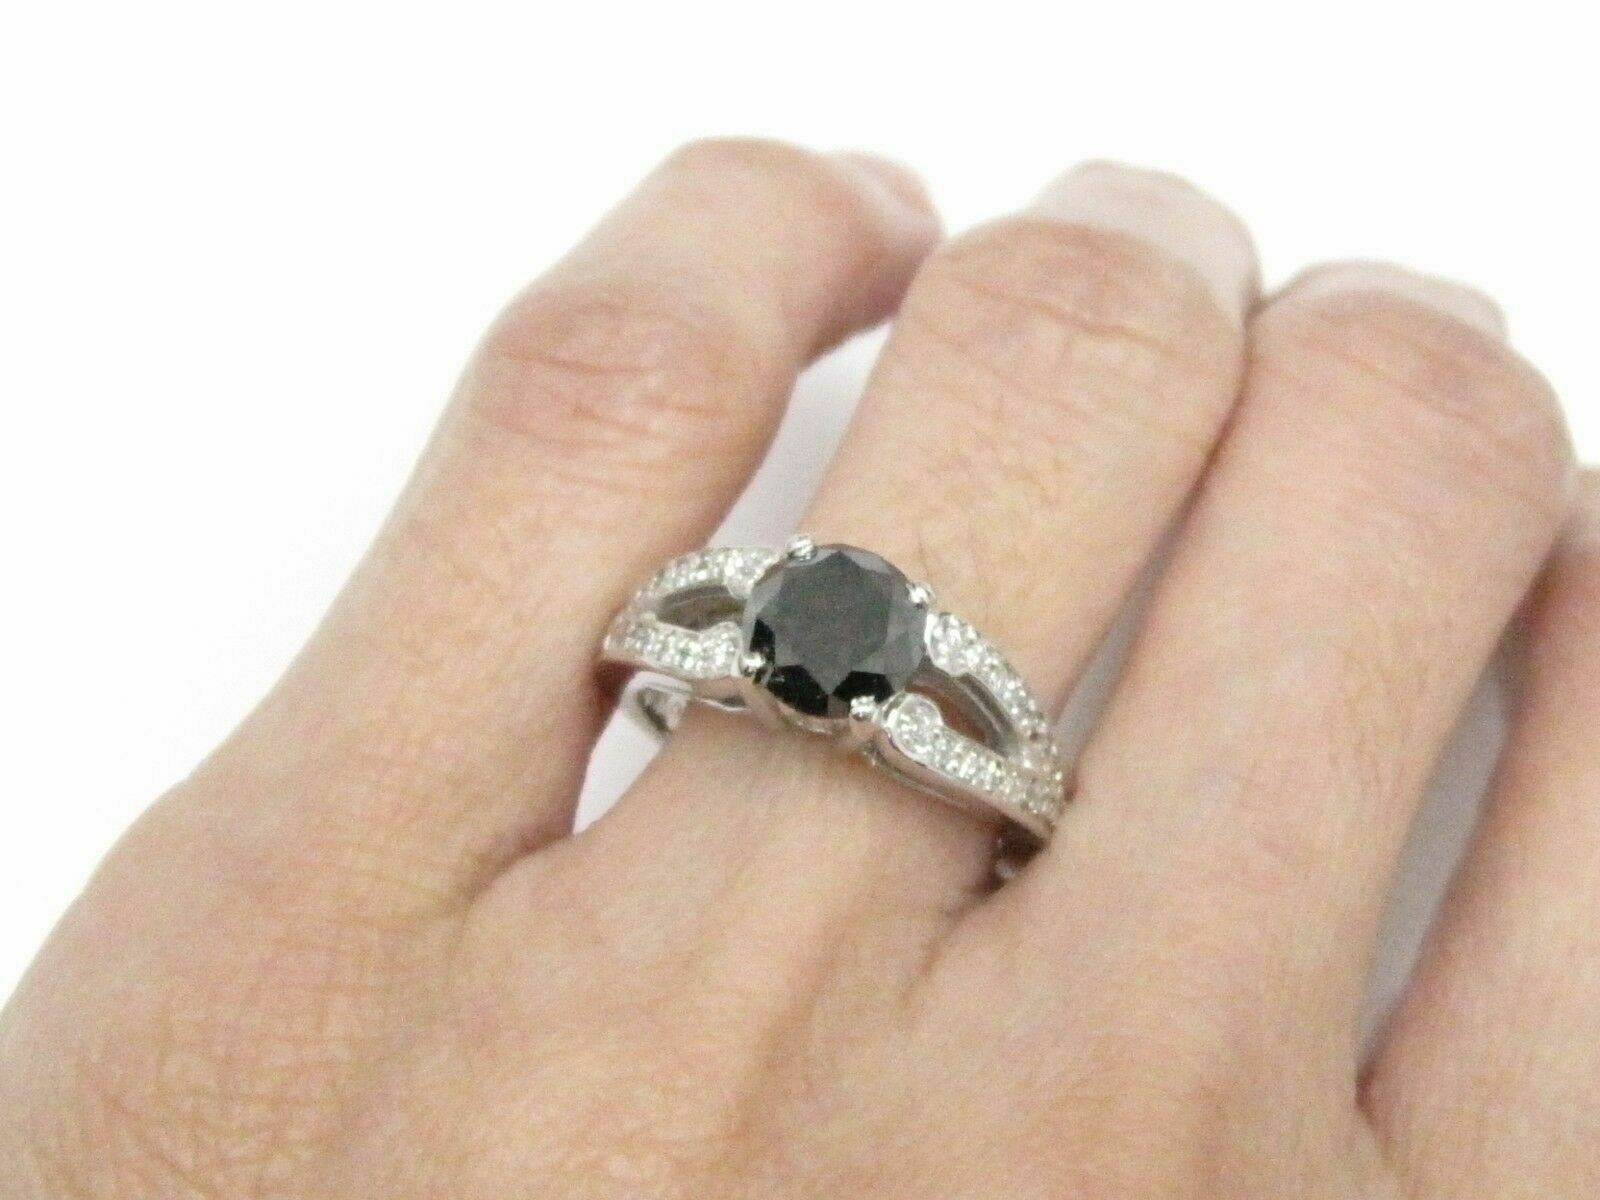 2.48 Natural Black & White Round Brilliants Diamond Ring Size 6 18kt White Gold